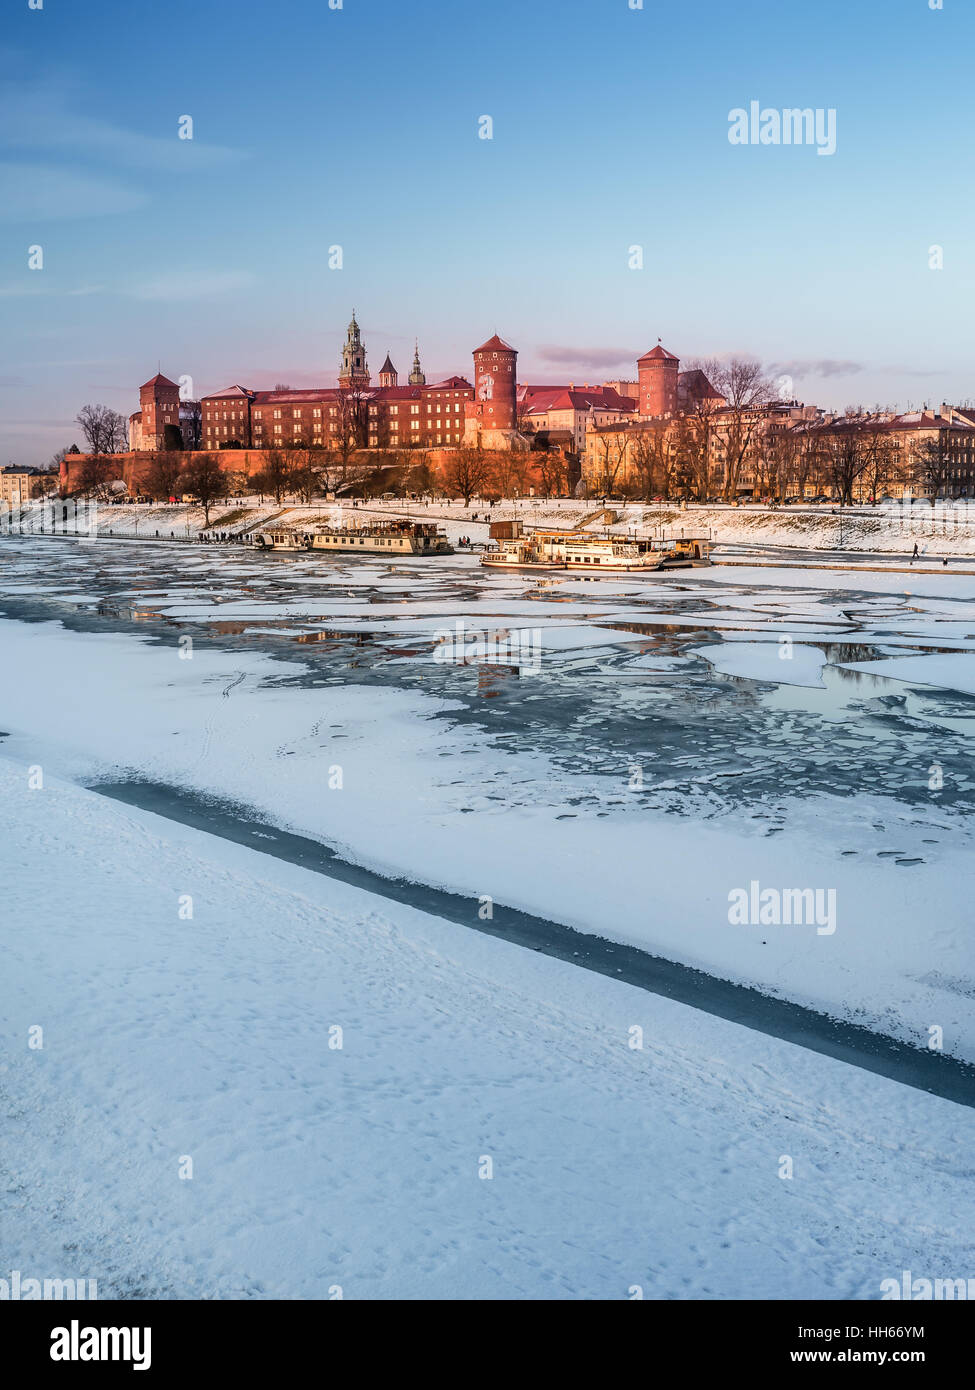 Château Royal de Wawel en hiver avec banquise sur la Vistule, Cracovie - Pologne Banque D'Images